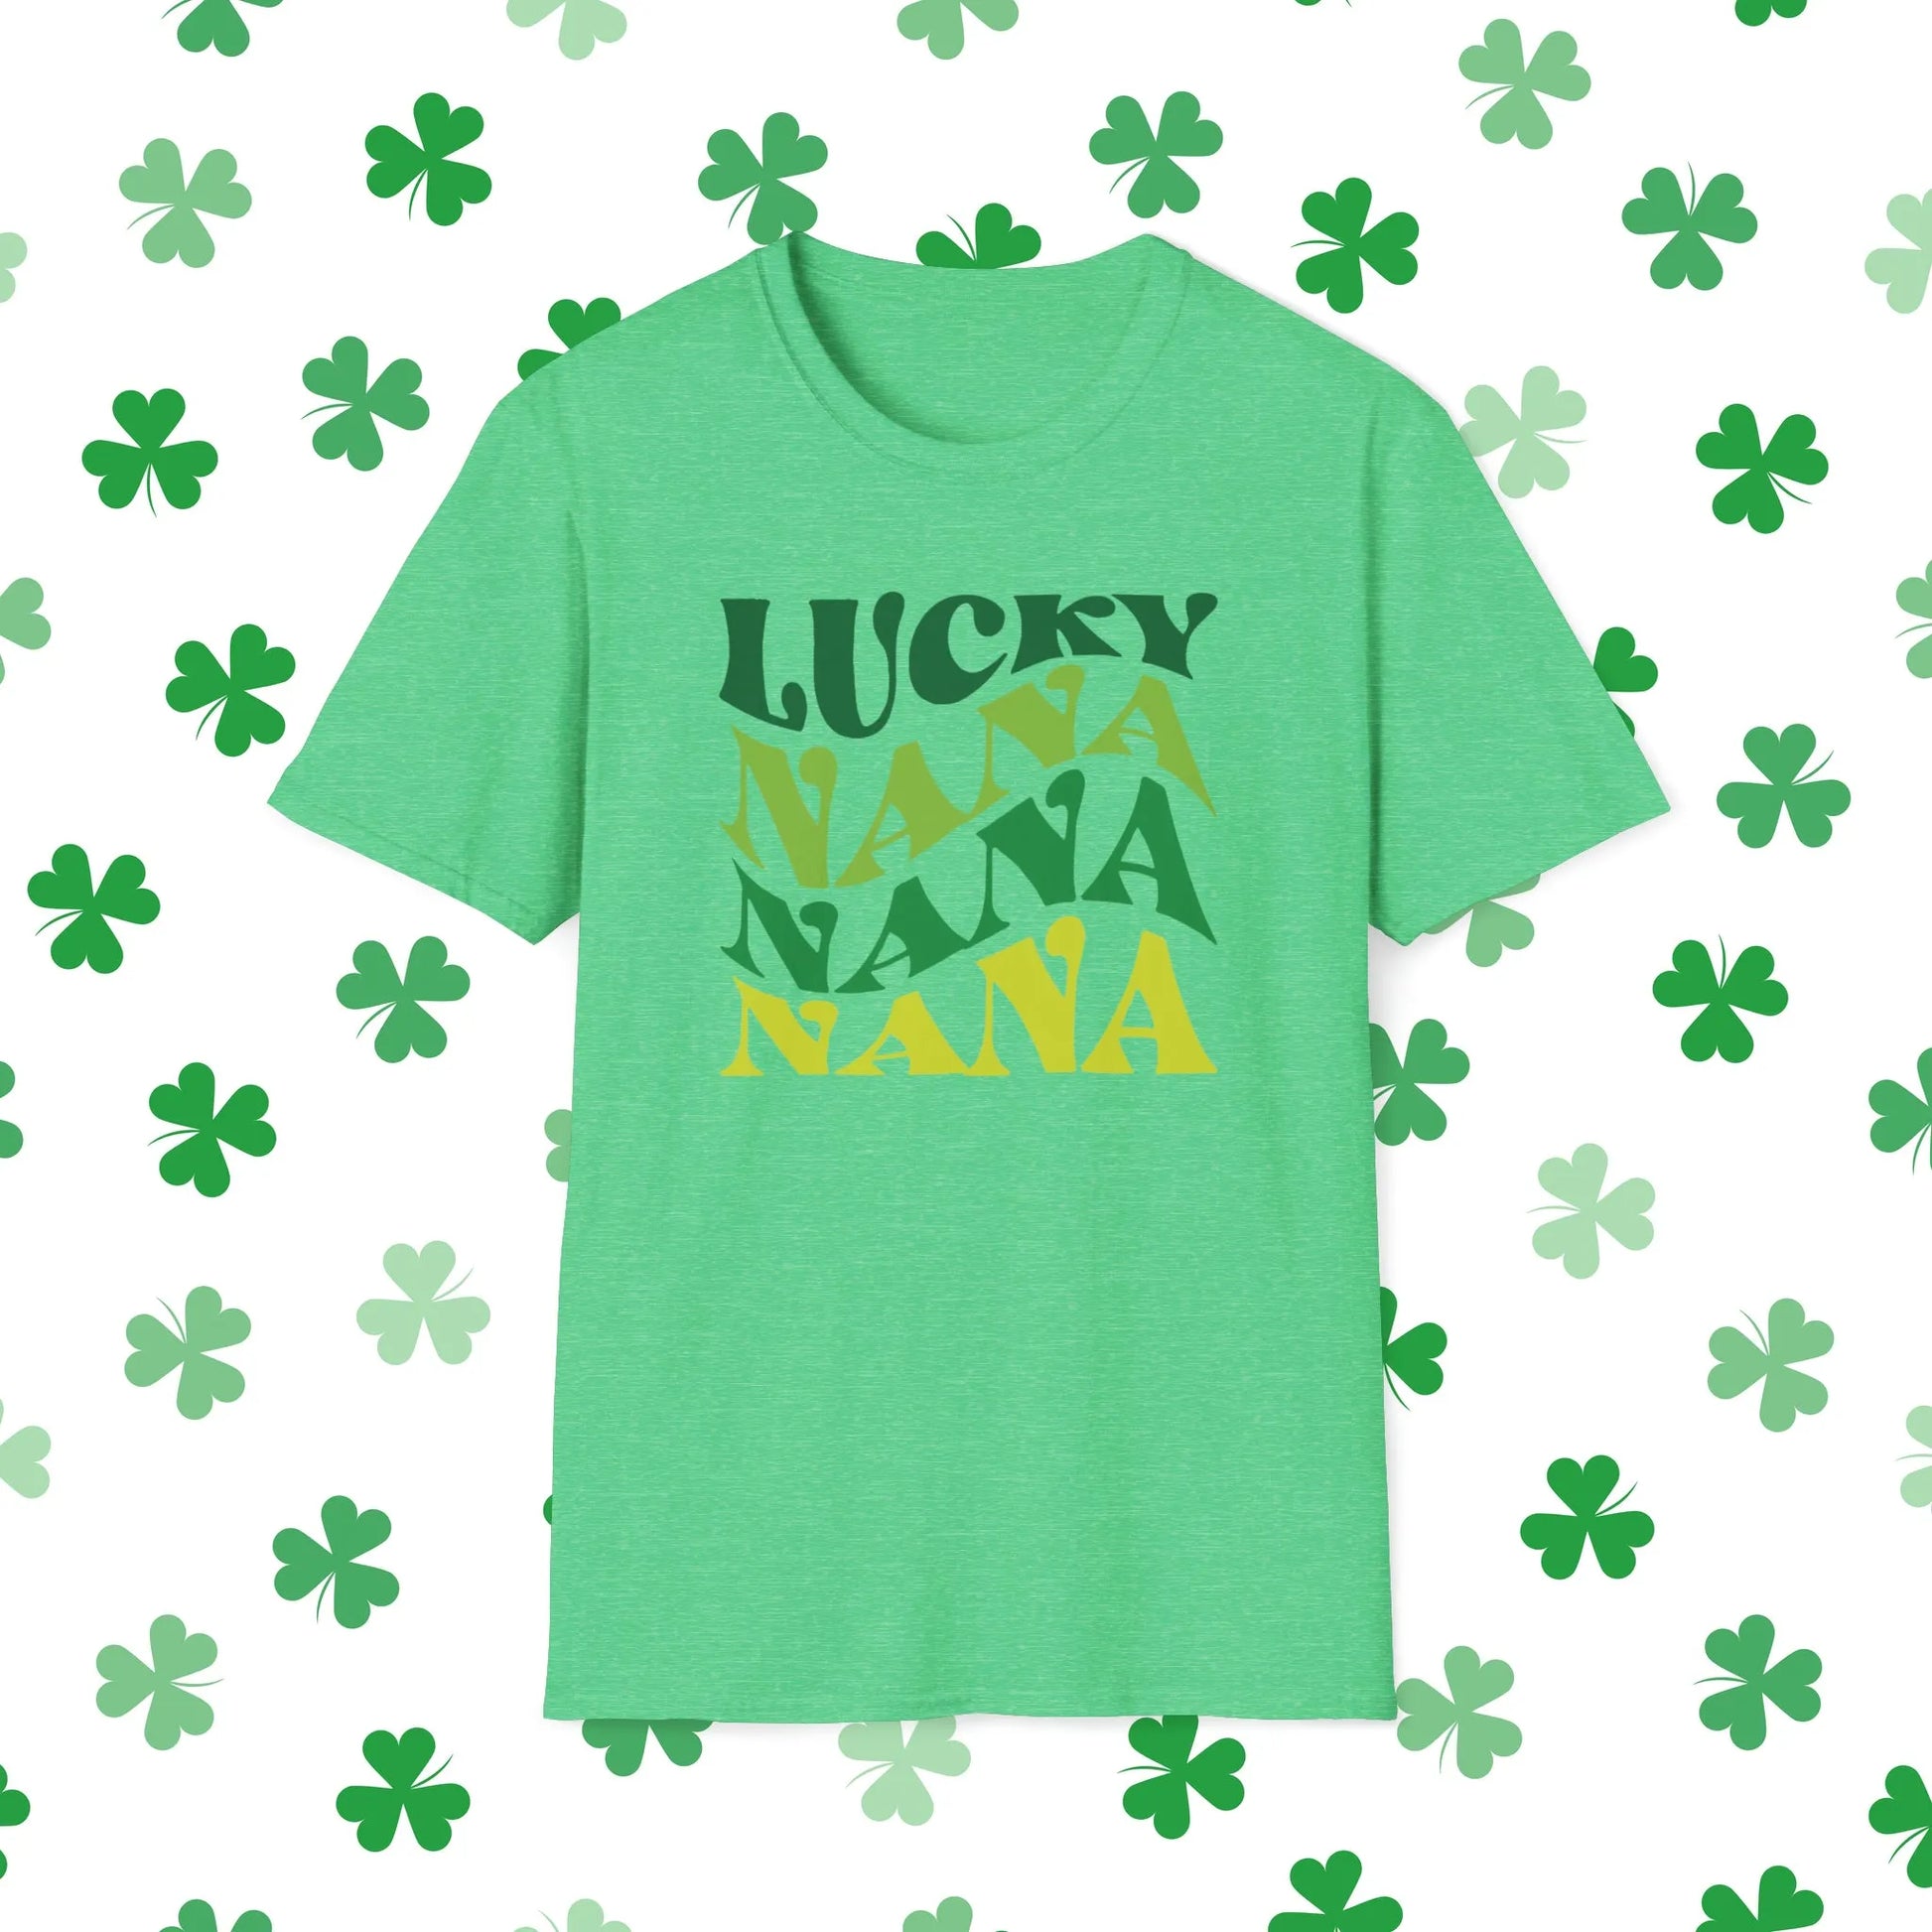 Lucky Nana Nana Nana Retro-Style St. Patrick's Day T-Shirt - Comfort & Charm - St. Patrick's Day Nana Shirt Green